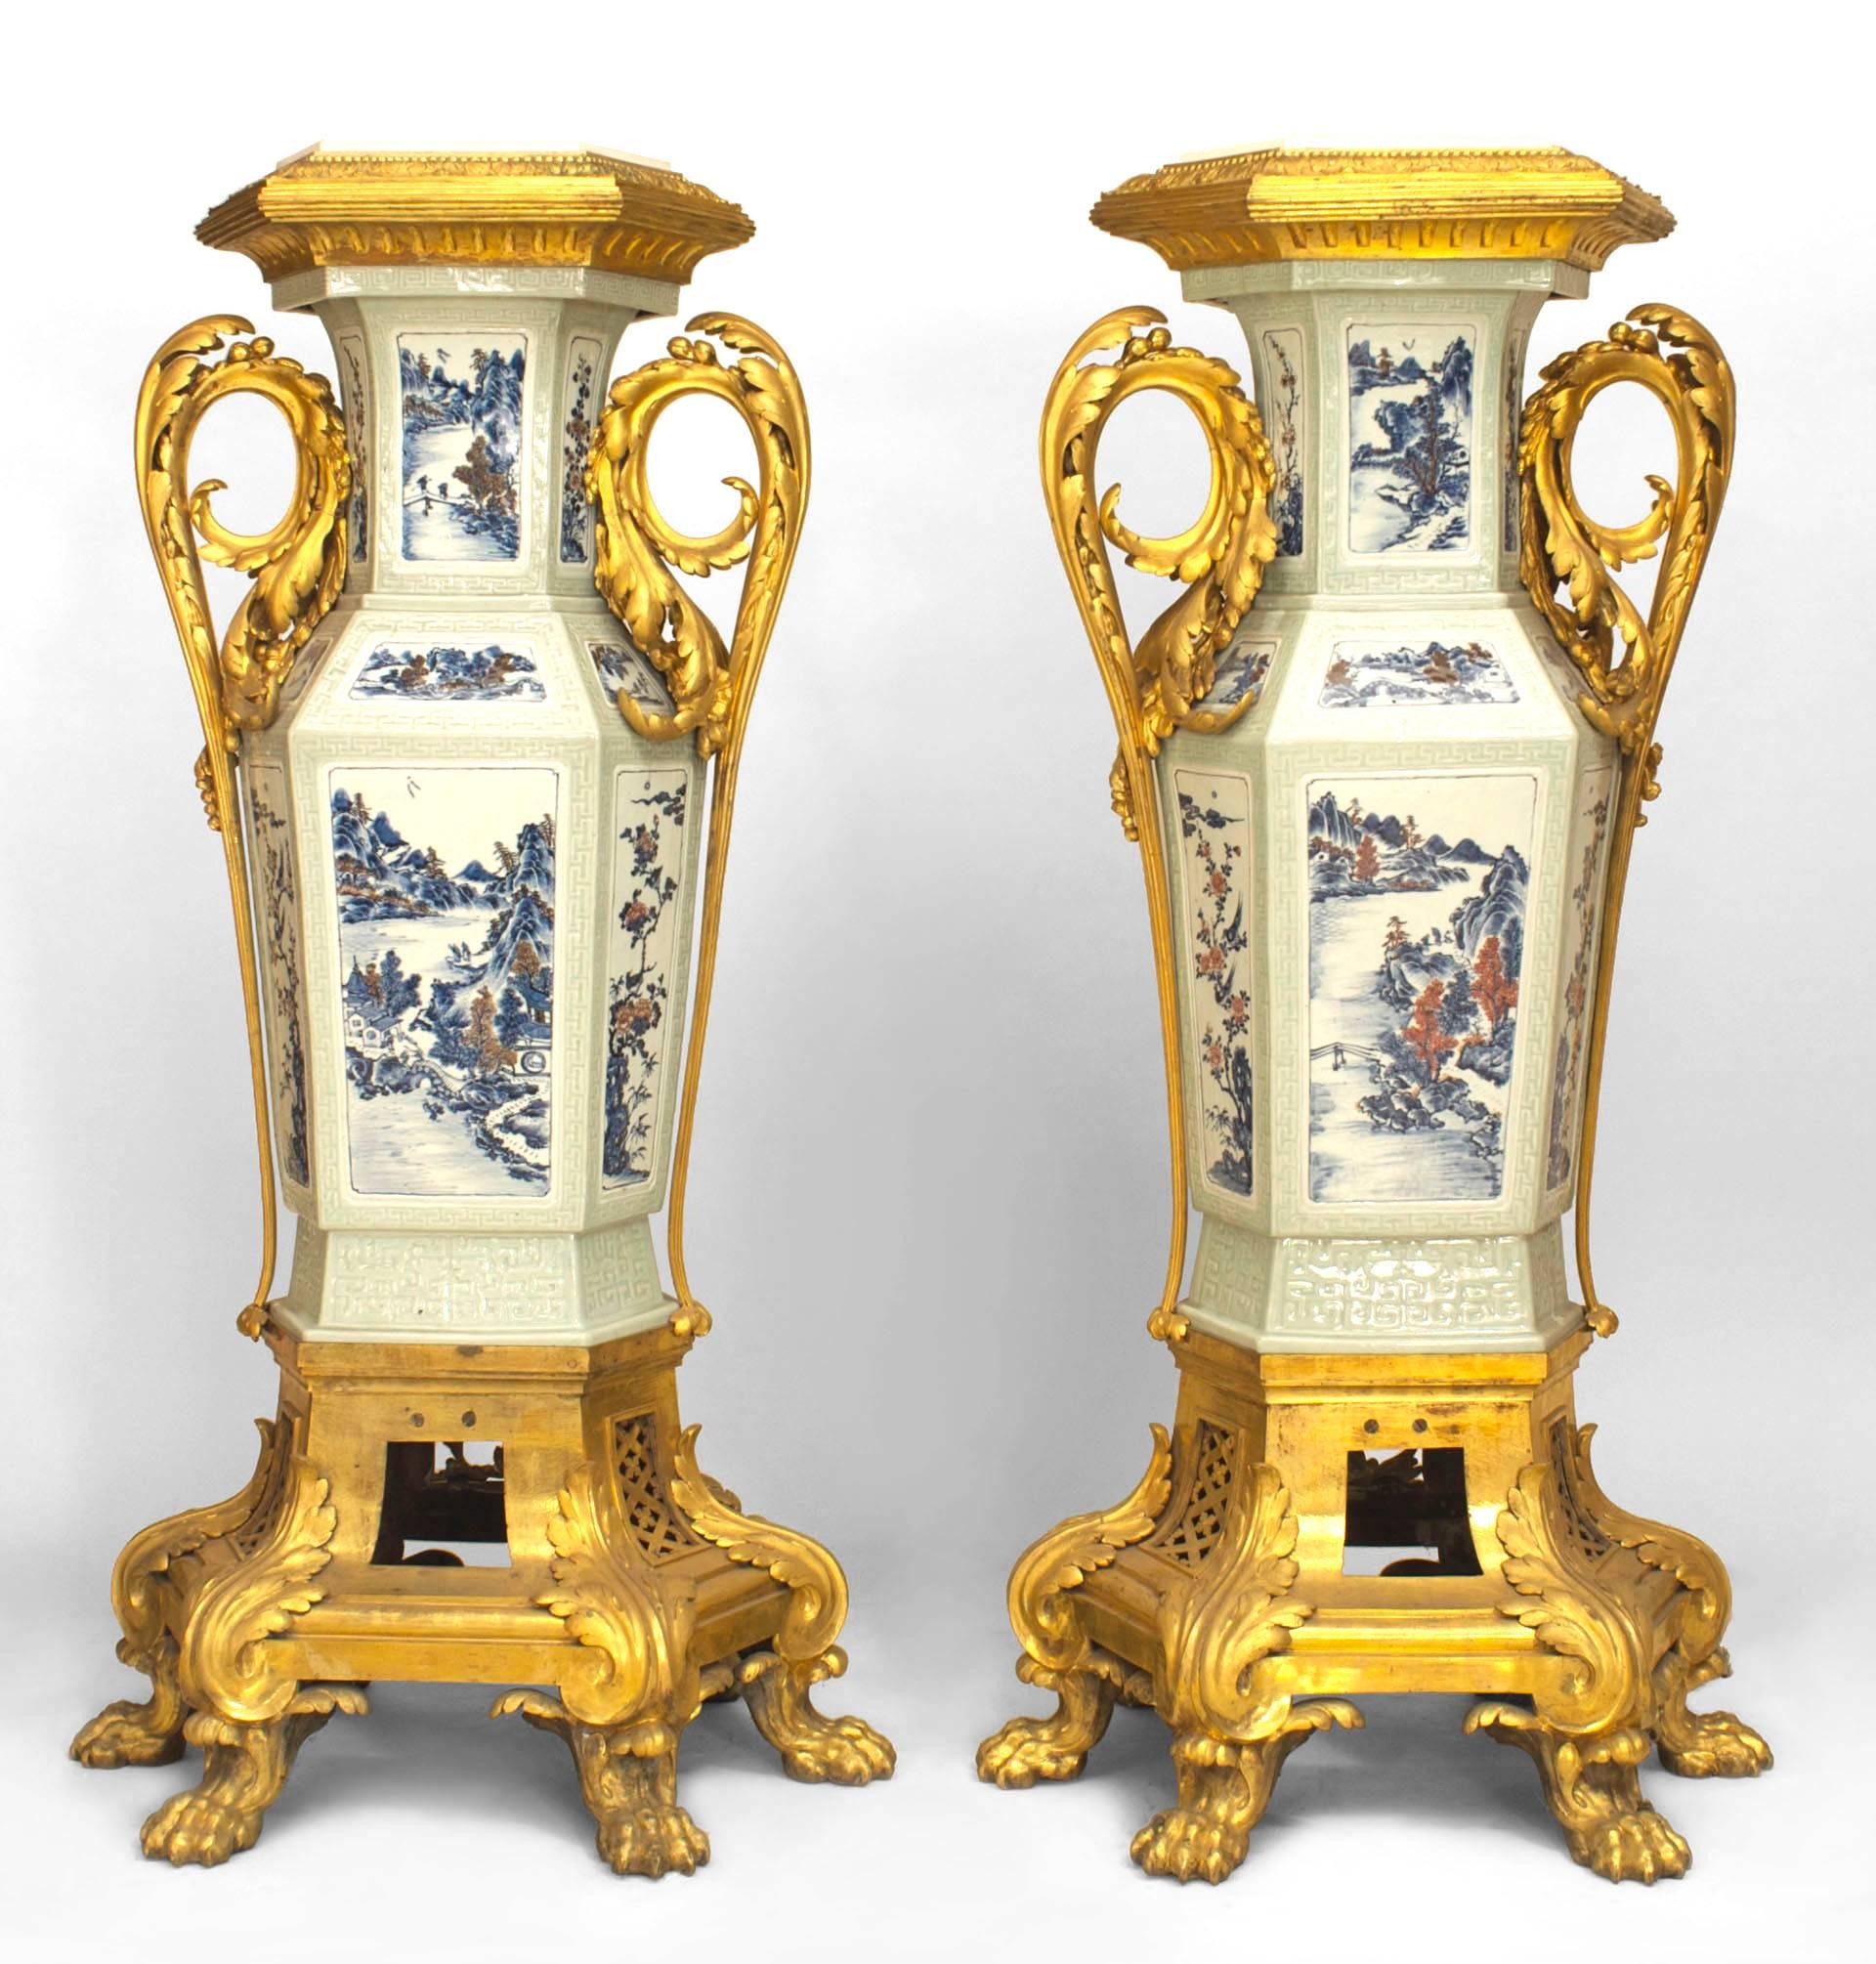 Paire de piédestaux de style Louis XV (19ème siècle) en porcelaine céladon de style asiatique chinois et garniture de festons en bronze doré. Base avec pieds griffes.
